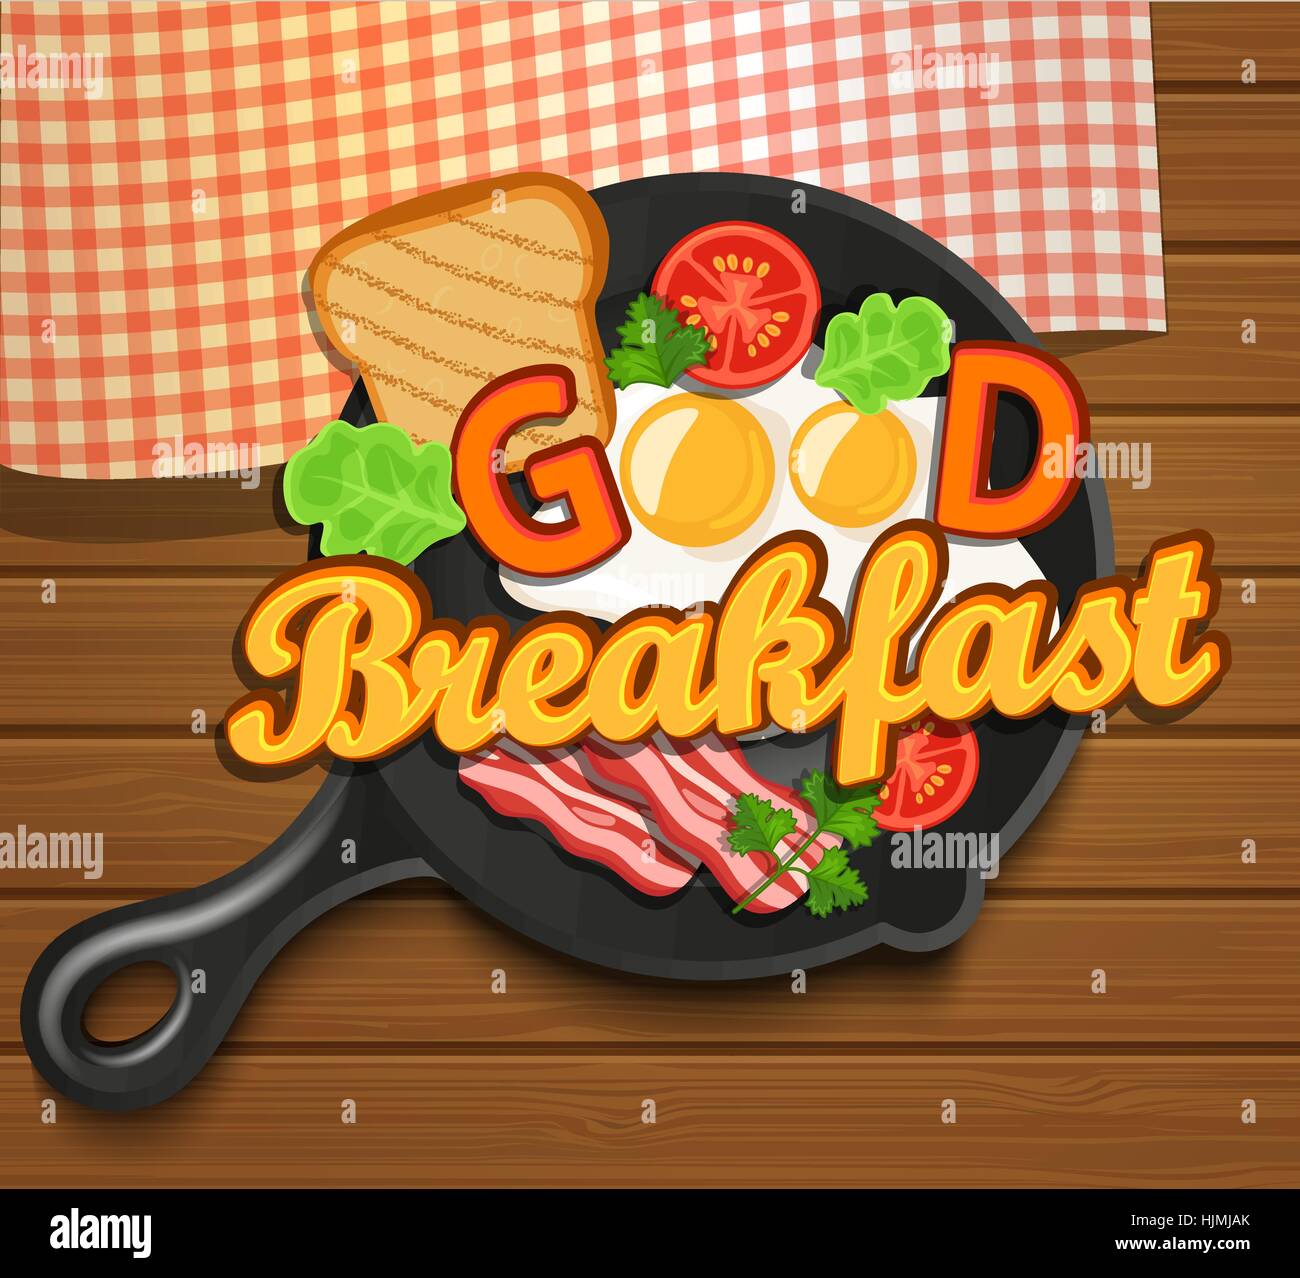 Petit-déjeuner anglais - œuf frit, tomates, du bacon et des toasts. Vue d'en haut. Bon petit déjeuner - lettrage, vector illustration. Illustration de Vecteur